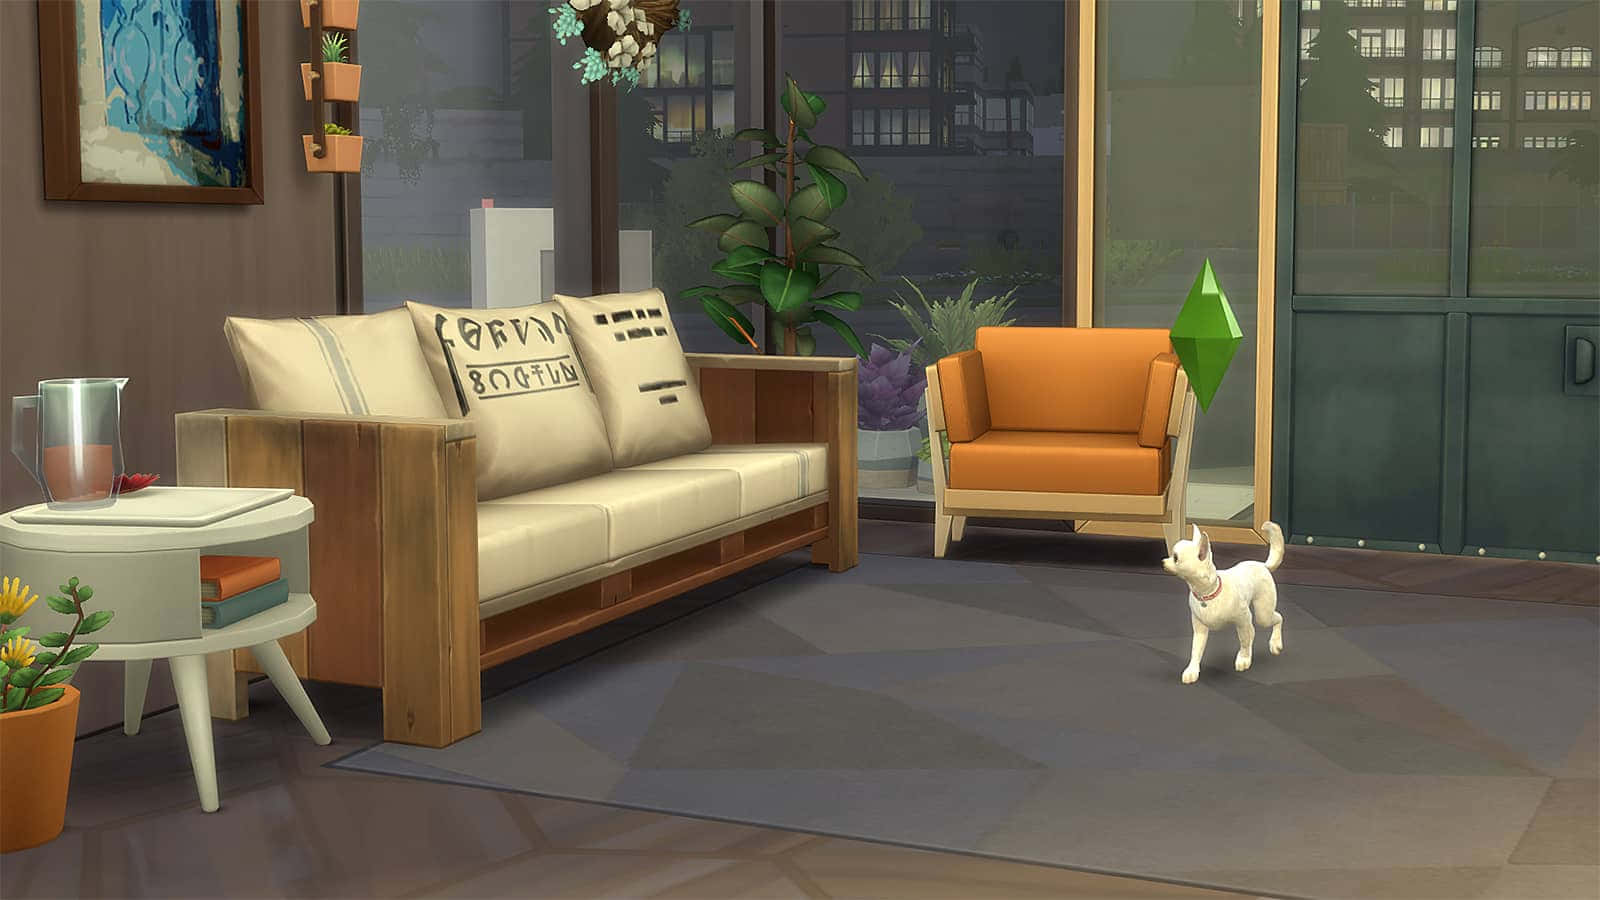 Wallpaper -  Katt leveværelse Sims 4 Cas bakgrunds tapet